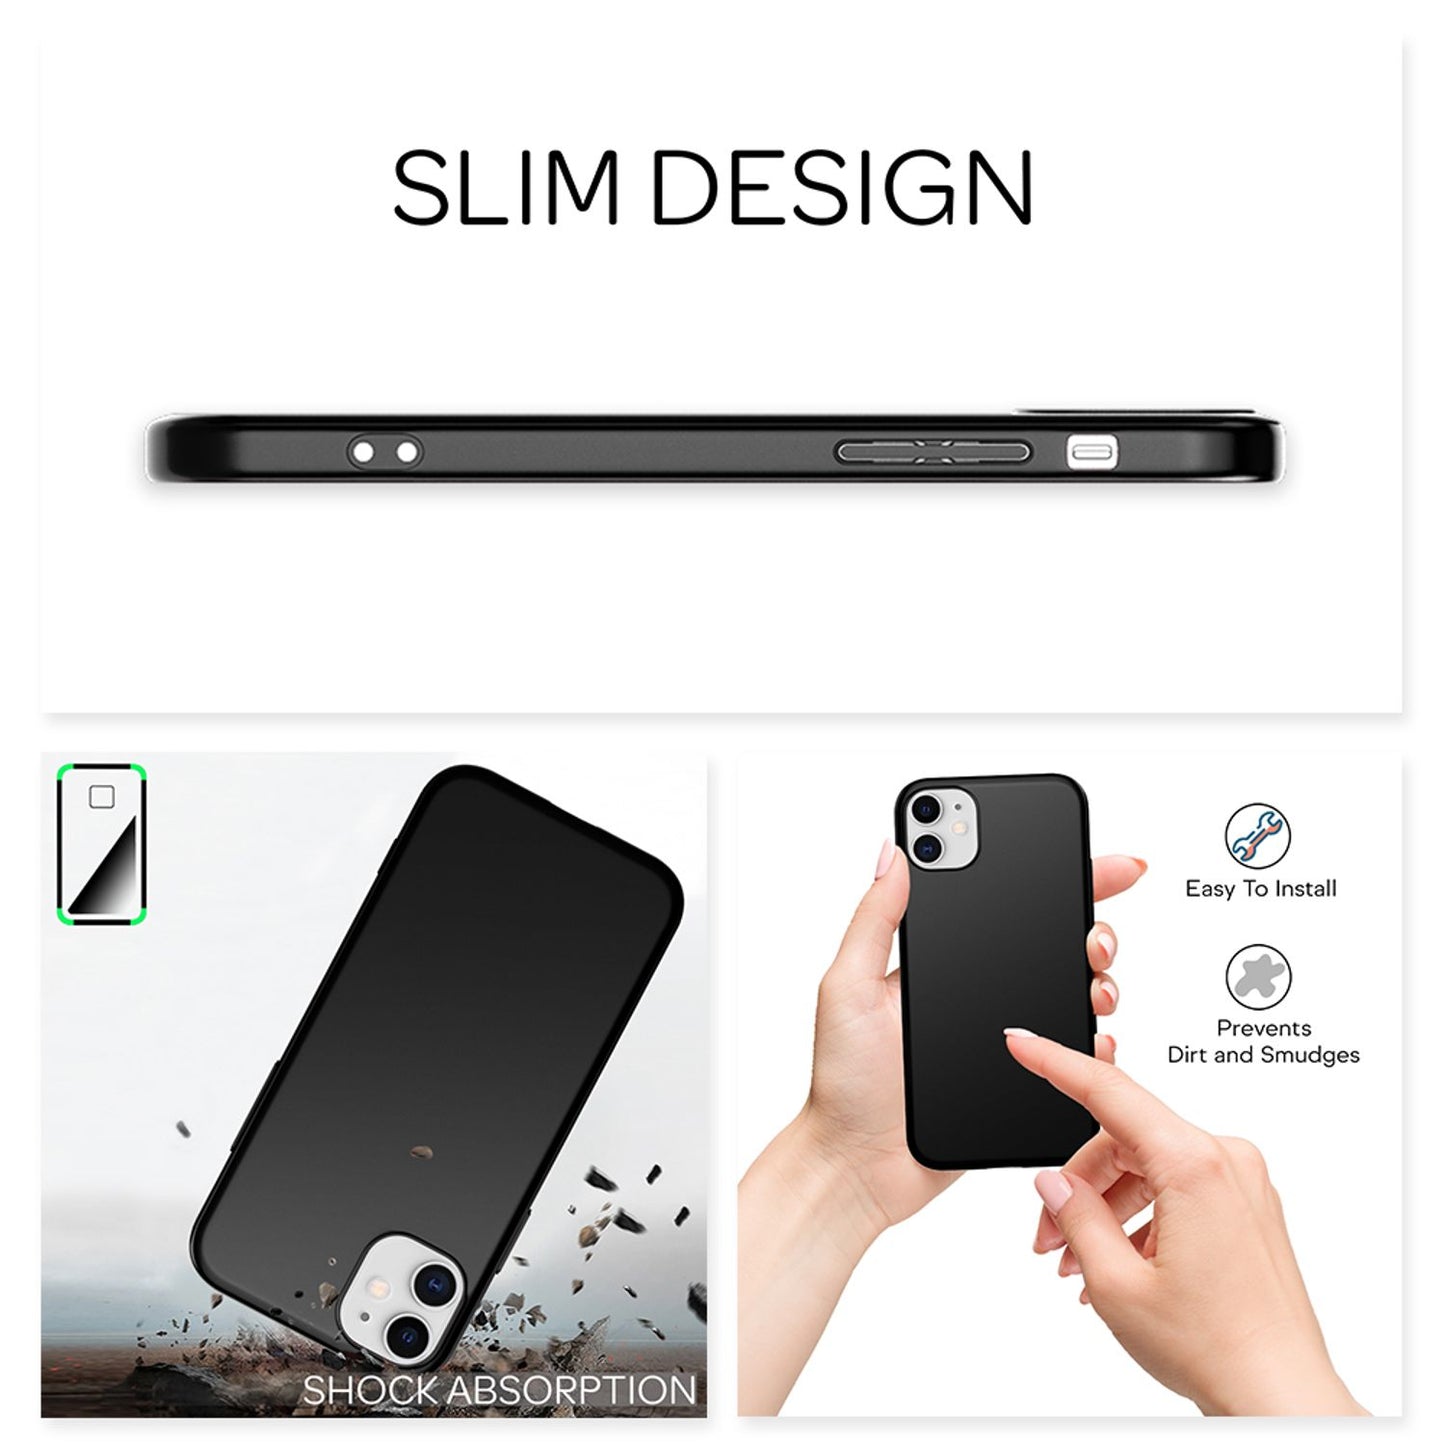 NALIA Hard Case für iPhone 12 mini, Slim Cover Handy Hülle Schutz Tasche Schale